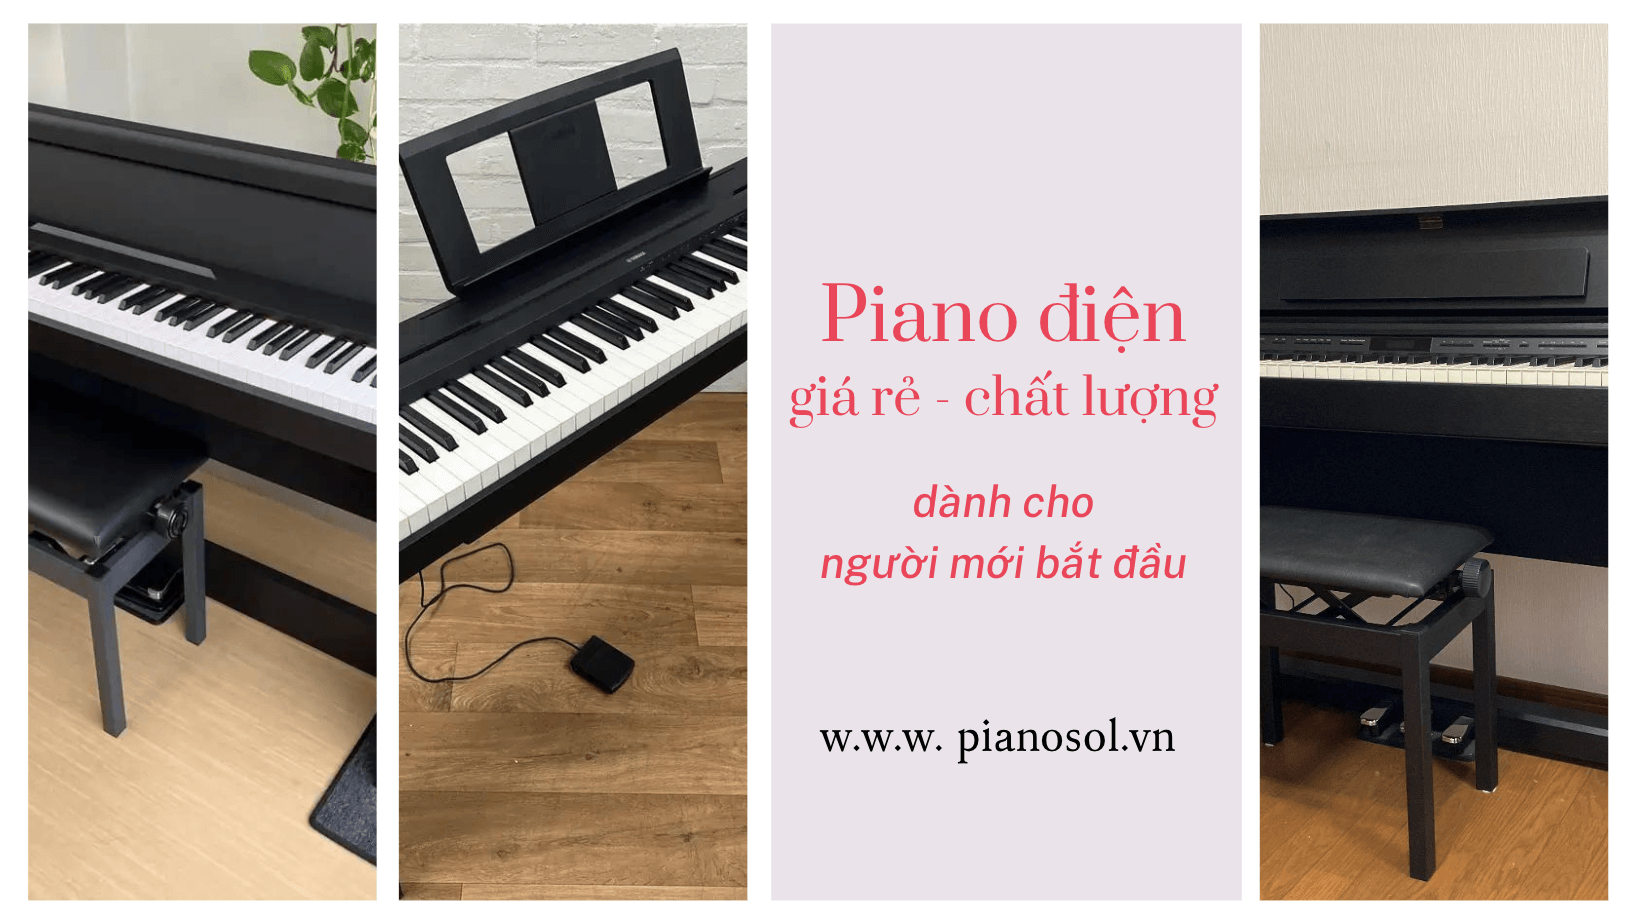 piano điện giá rẻ chất lượng cho người mới bắt học